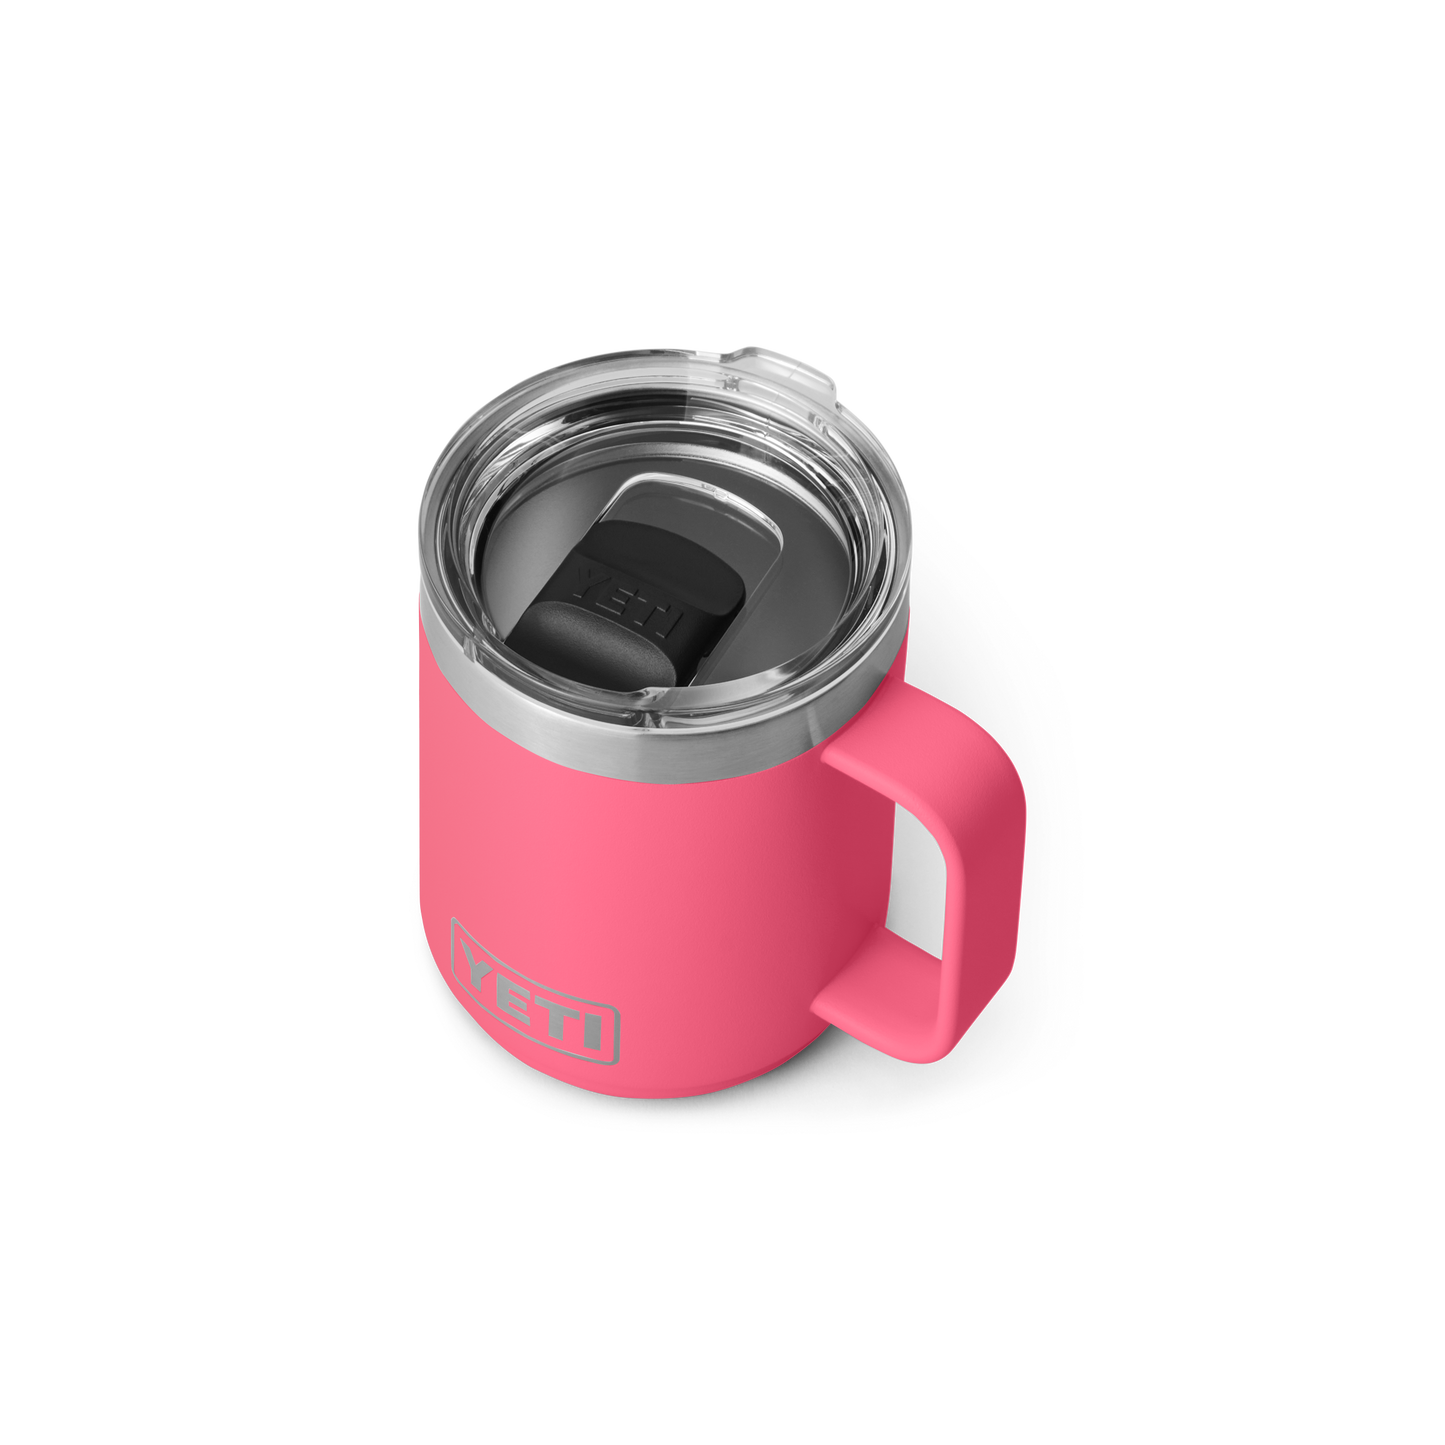 Yeti Rambler 10oz Mug MS Tropical Pink